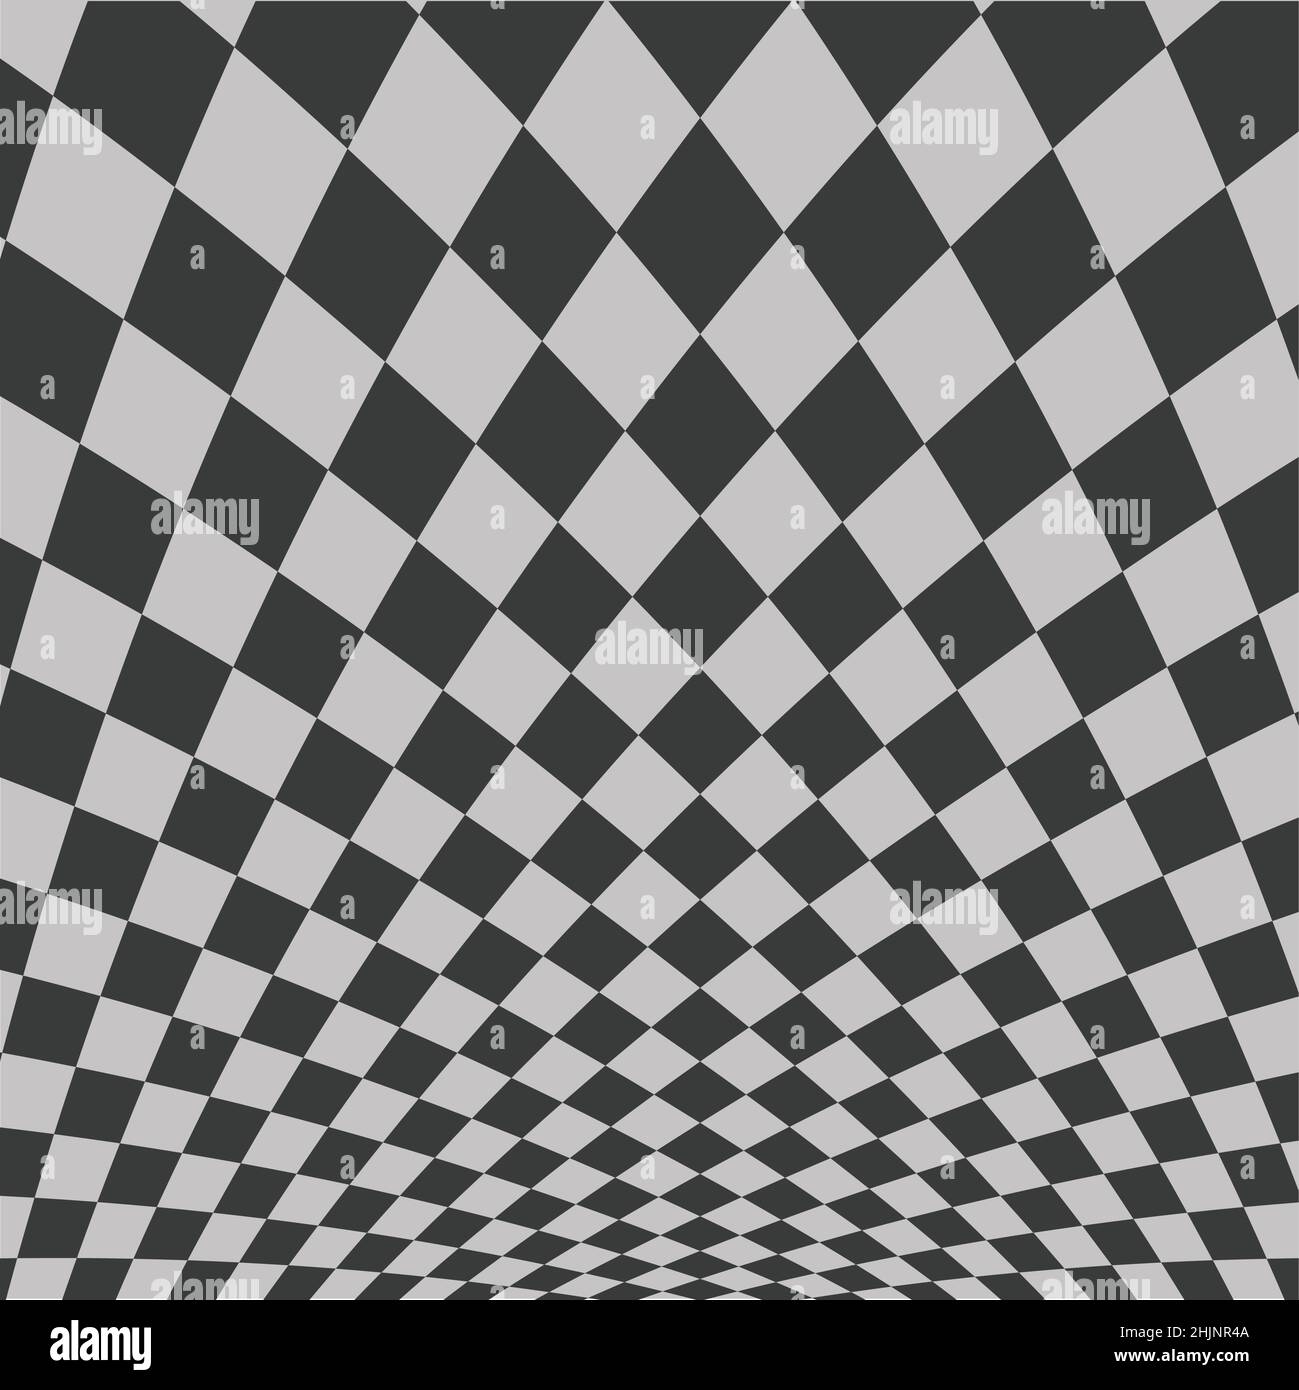 Ein Schachbrettmuster in Dunkelgrau und Hellgrau. Das Muster ist verzogen und scheint sich um den Boden zu biegen. Stock Vektor